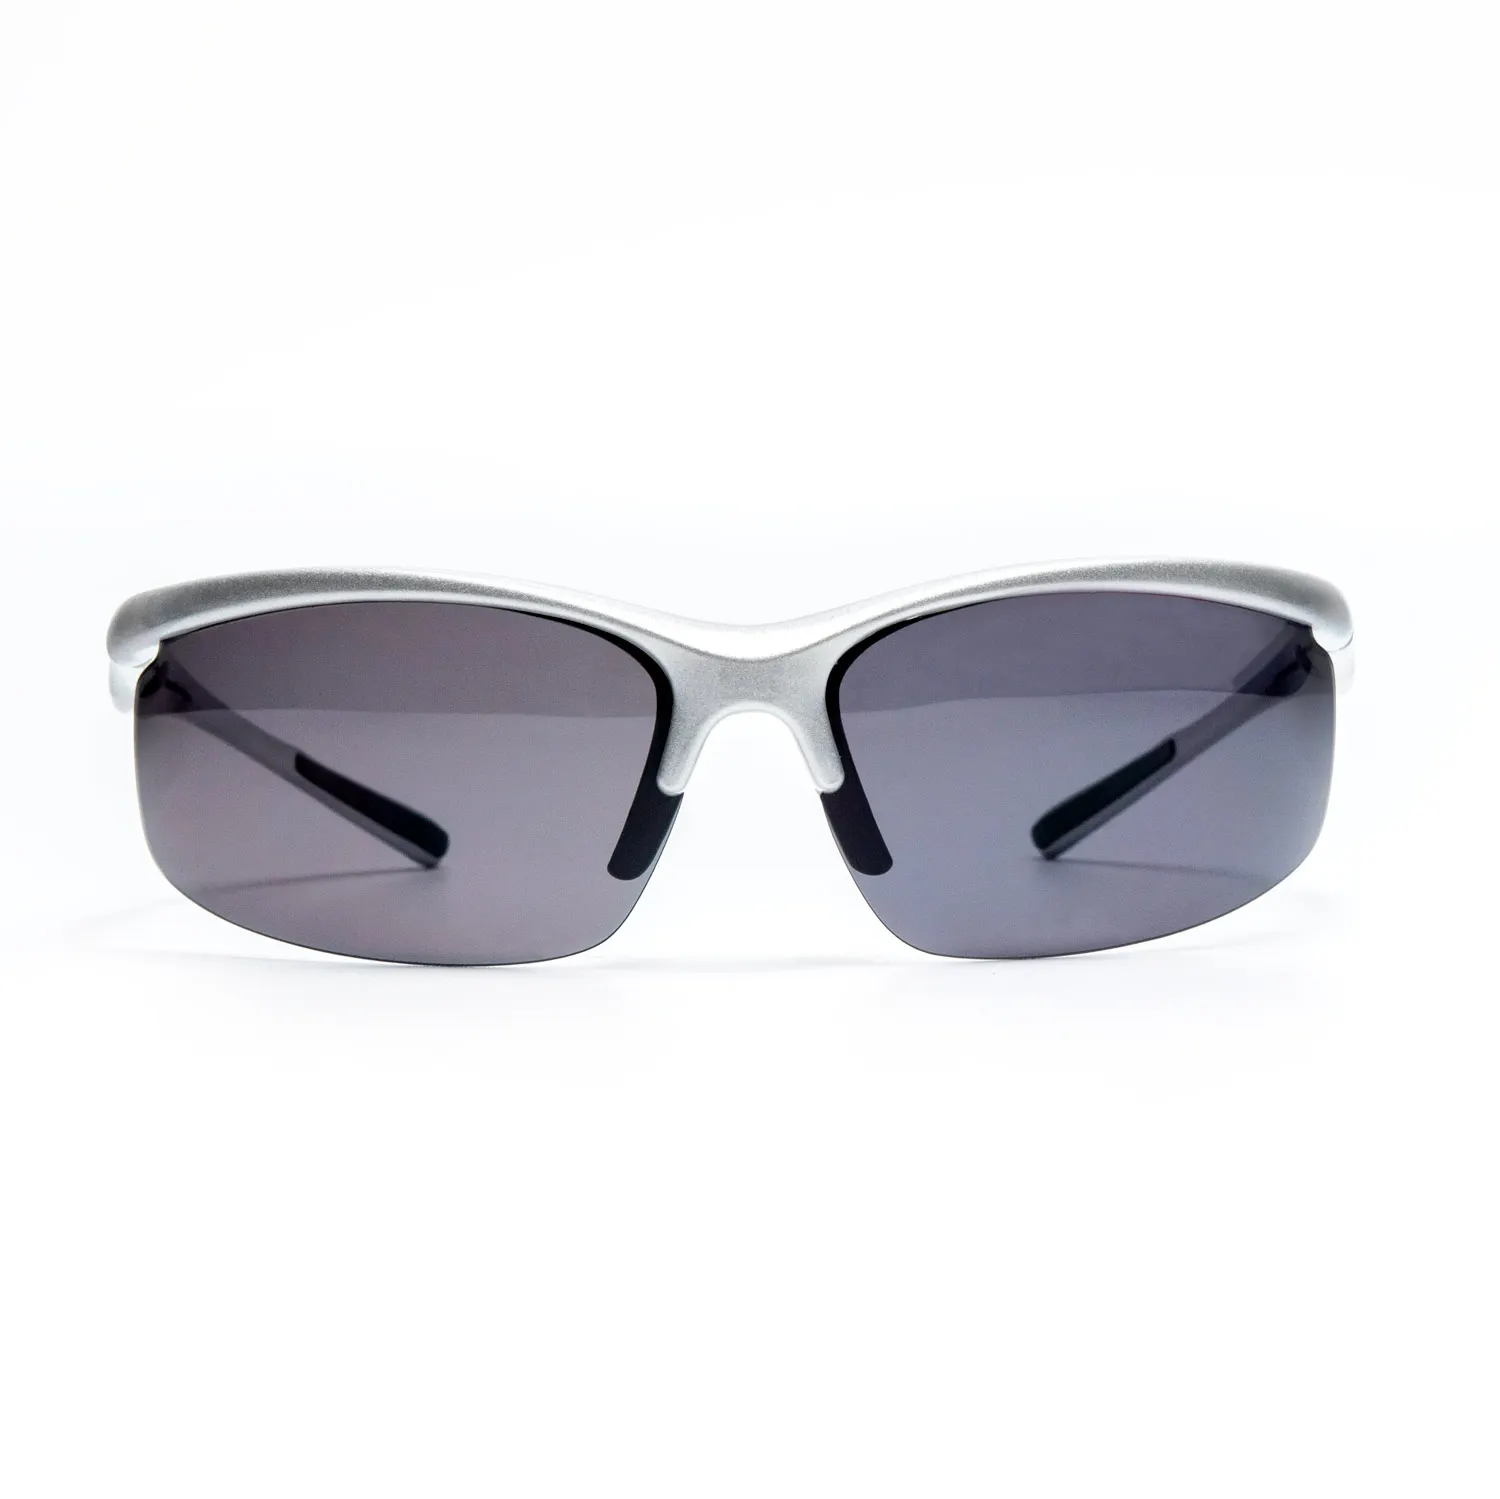 Mens Uv400 Wholesale Float Glasses Sport Sun Glasses Tr90 Frame Outdoor Fishing Beach Surfing Sunglasses